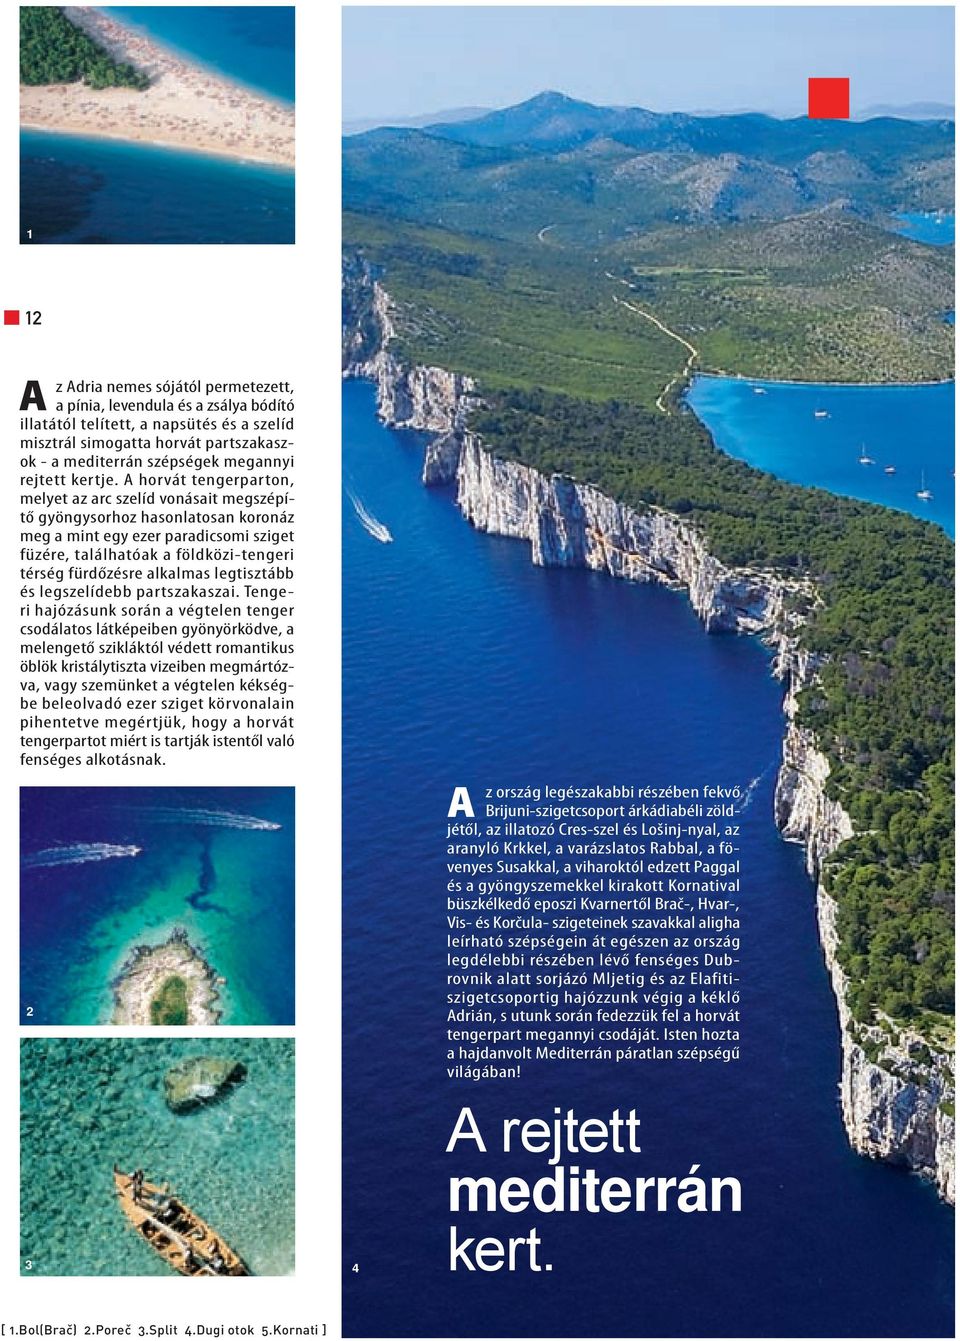 A horvát tengerparton, melyet az arc szelíd vonásait megszépítő gyöngysorhoz hasonlatosan koronáz meg a mint egy ezer paradicsomi sziget füzére, találhatóak a földközi-tengeri térség fürdőzésre